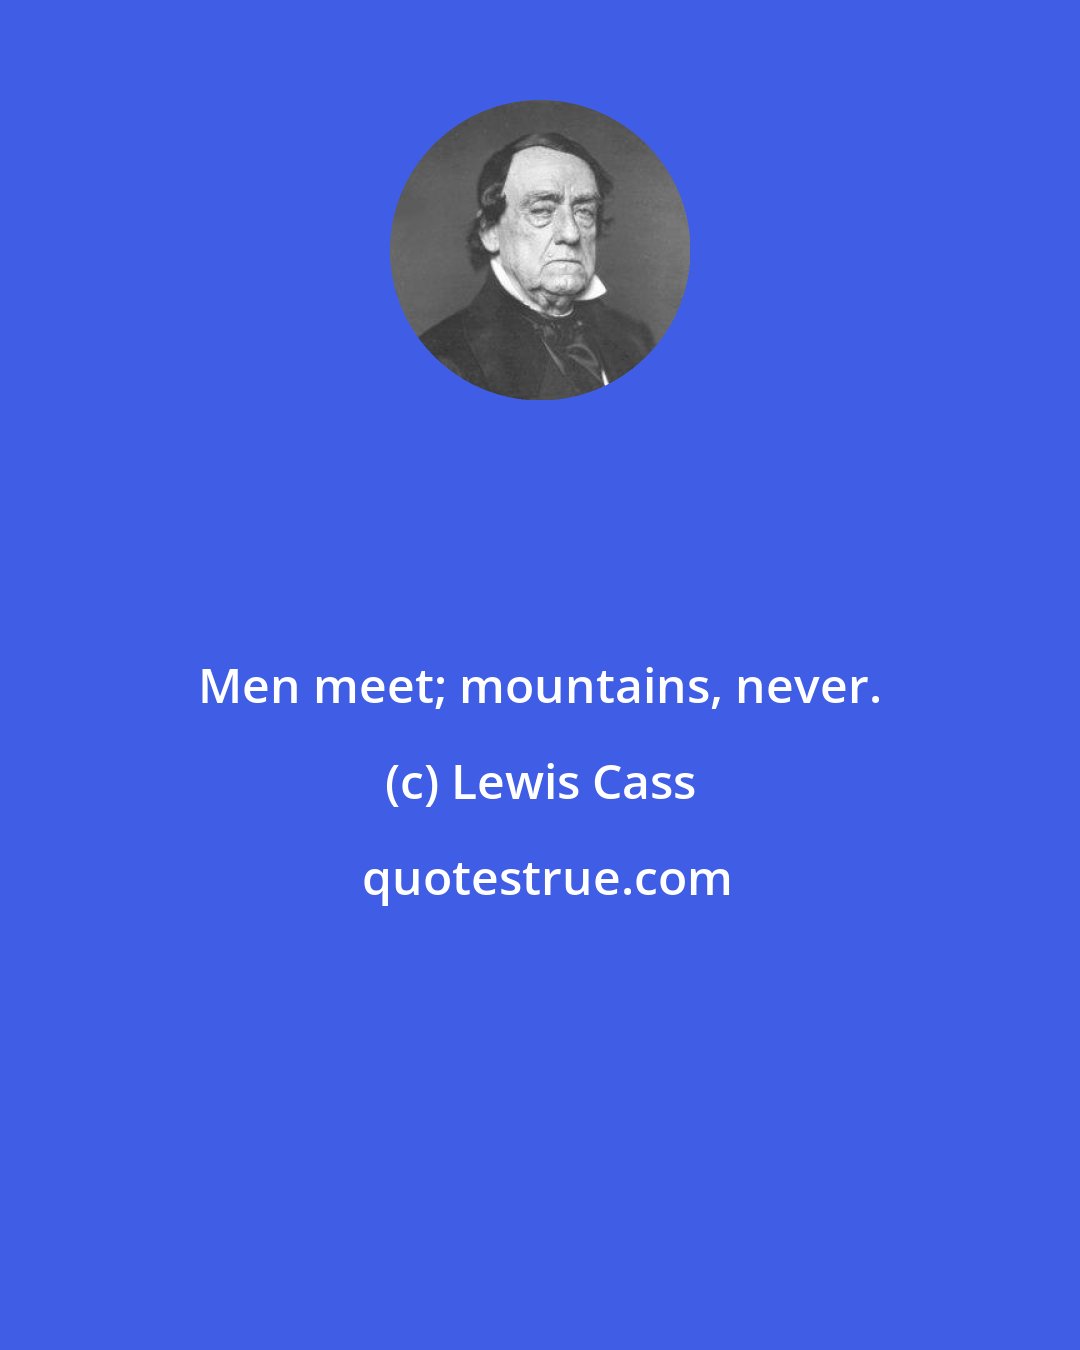 Lewis Cass: Men meet; mountains, never.